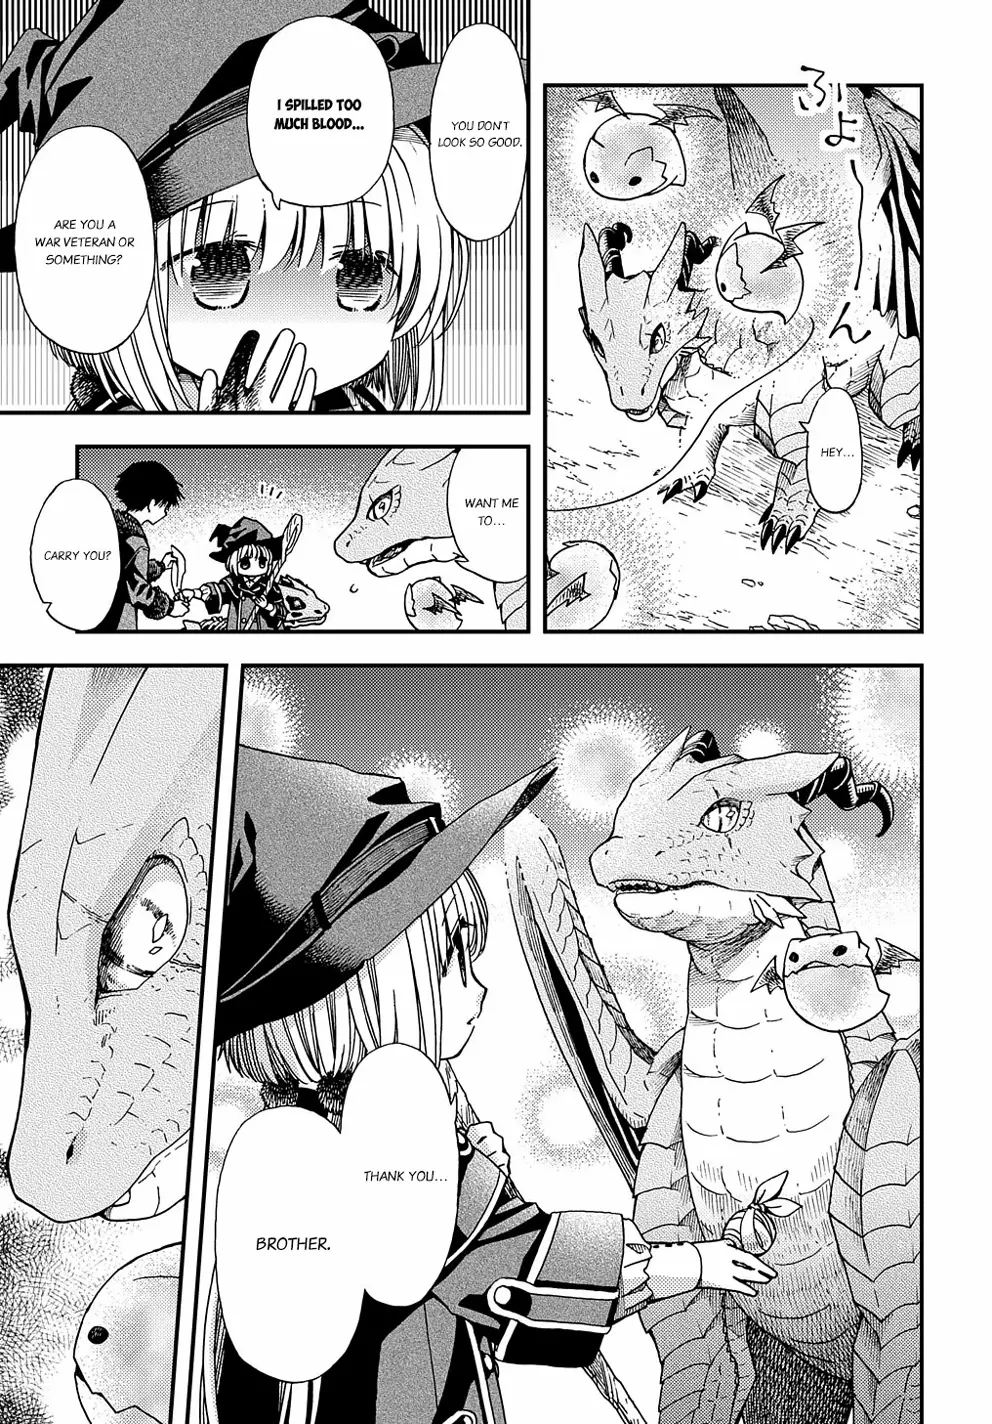 Hone Dragon No Mana Musume - 6 page 34-28169520